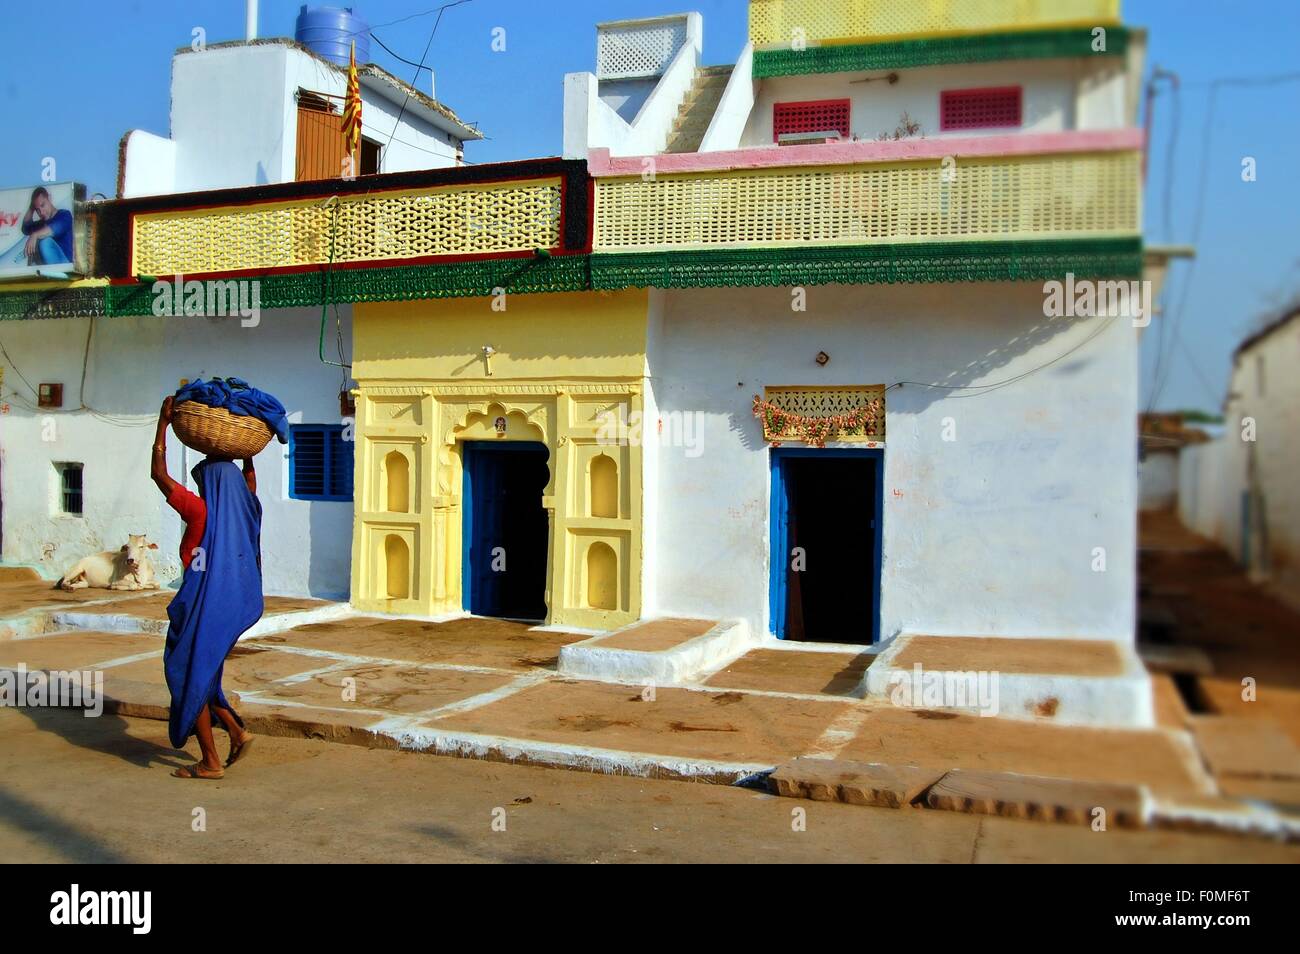 Frau in blau mit einem Korb auf dem Kopf in einer ruhigen Straße im Dorf Orchha, Madhya Pradesh, Indien Stockfoto